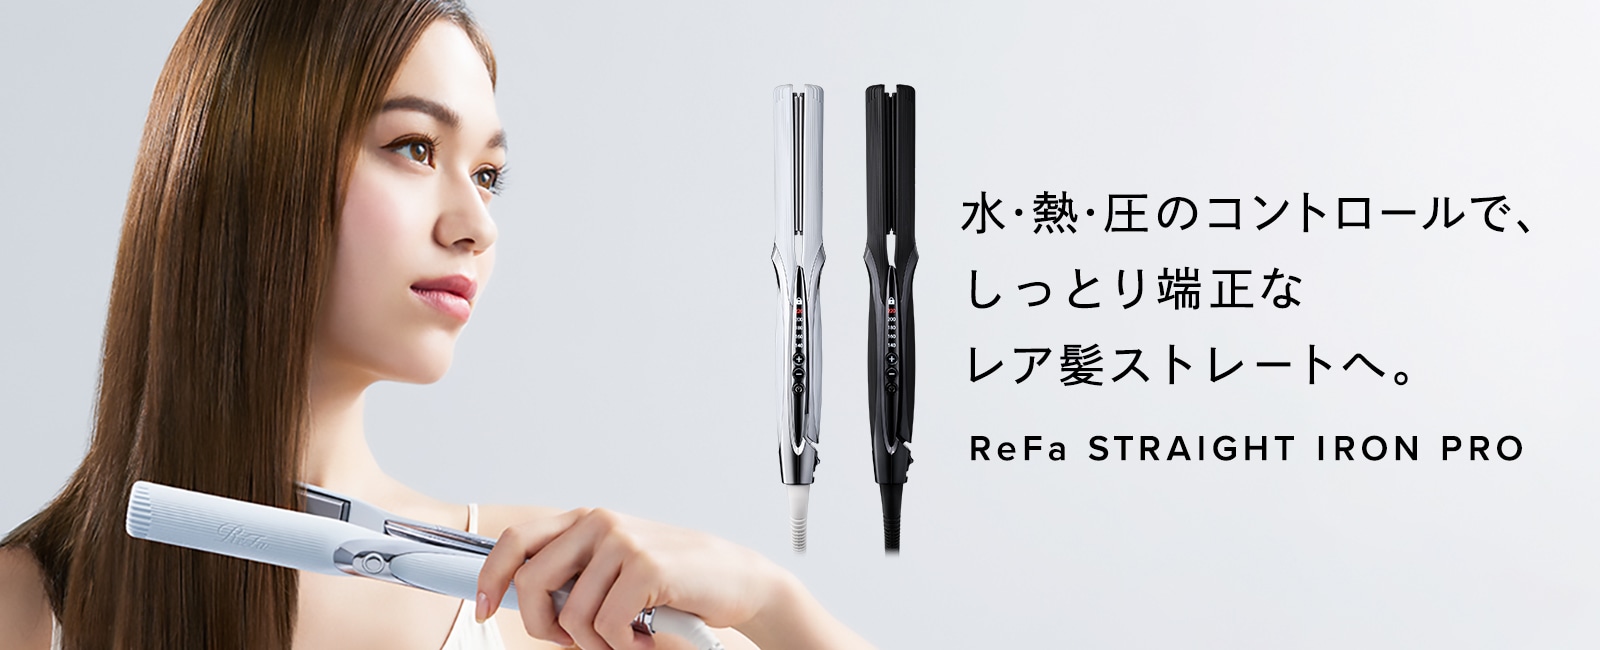 【新商品】　ReFa STRAIGHT IRON PRO 販売開始しました。